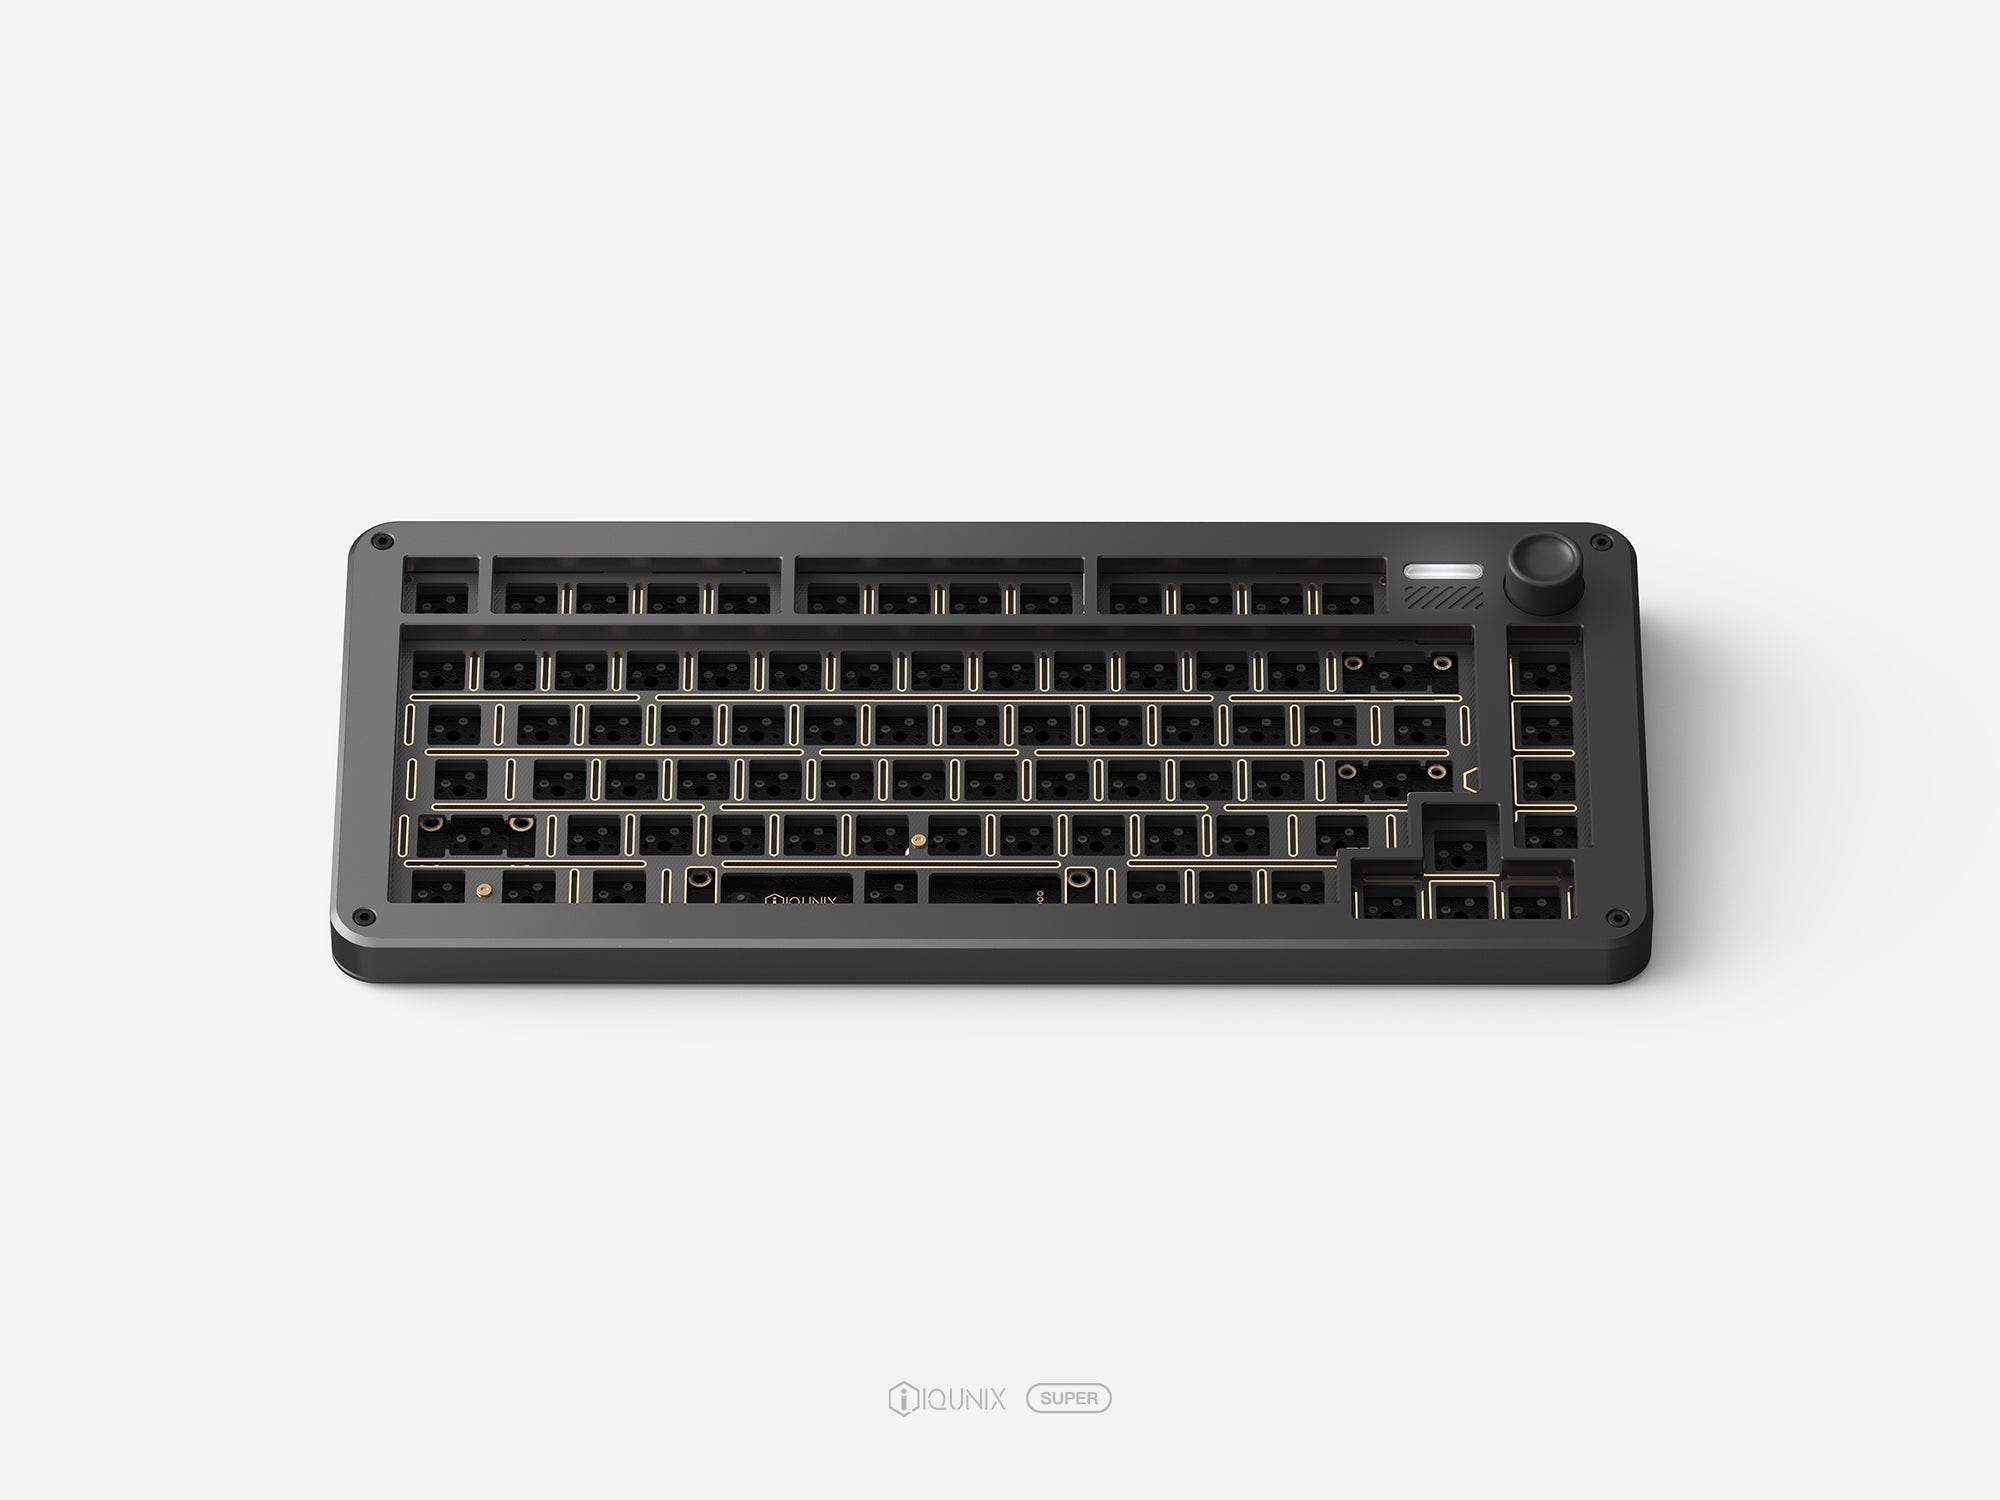 ZONEX 75 Keyboard Kit | IQUNIX SUPER SERIES – IQUNIX Super